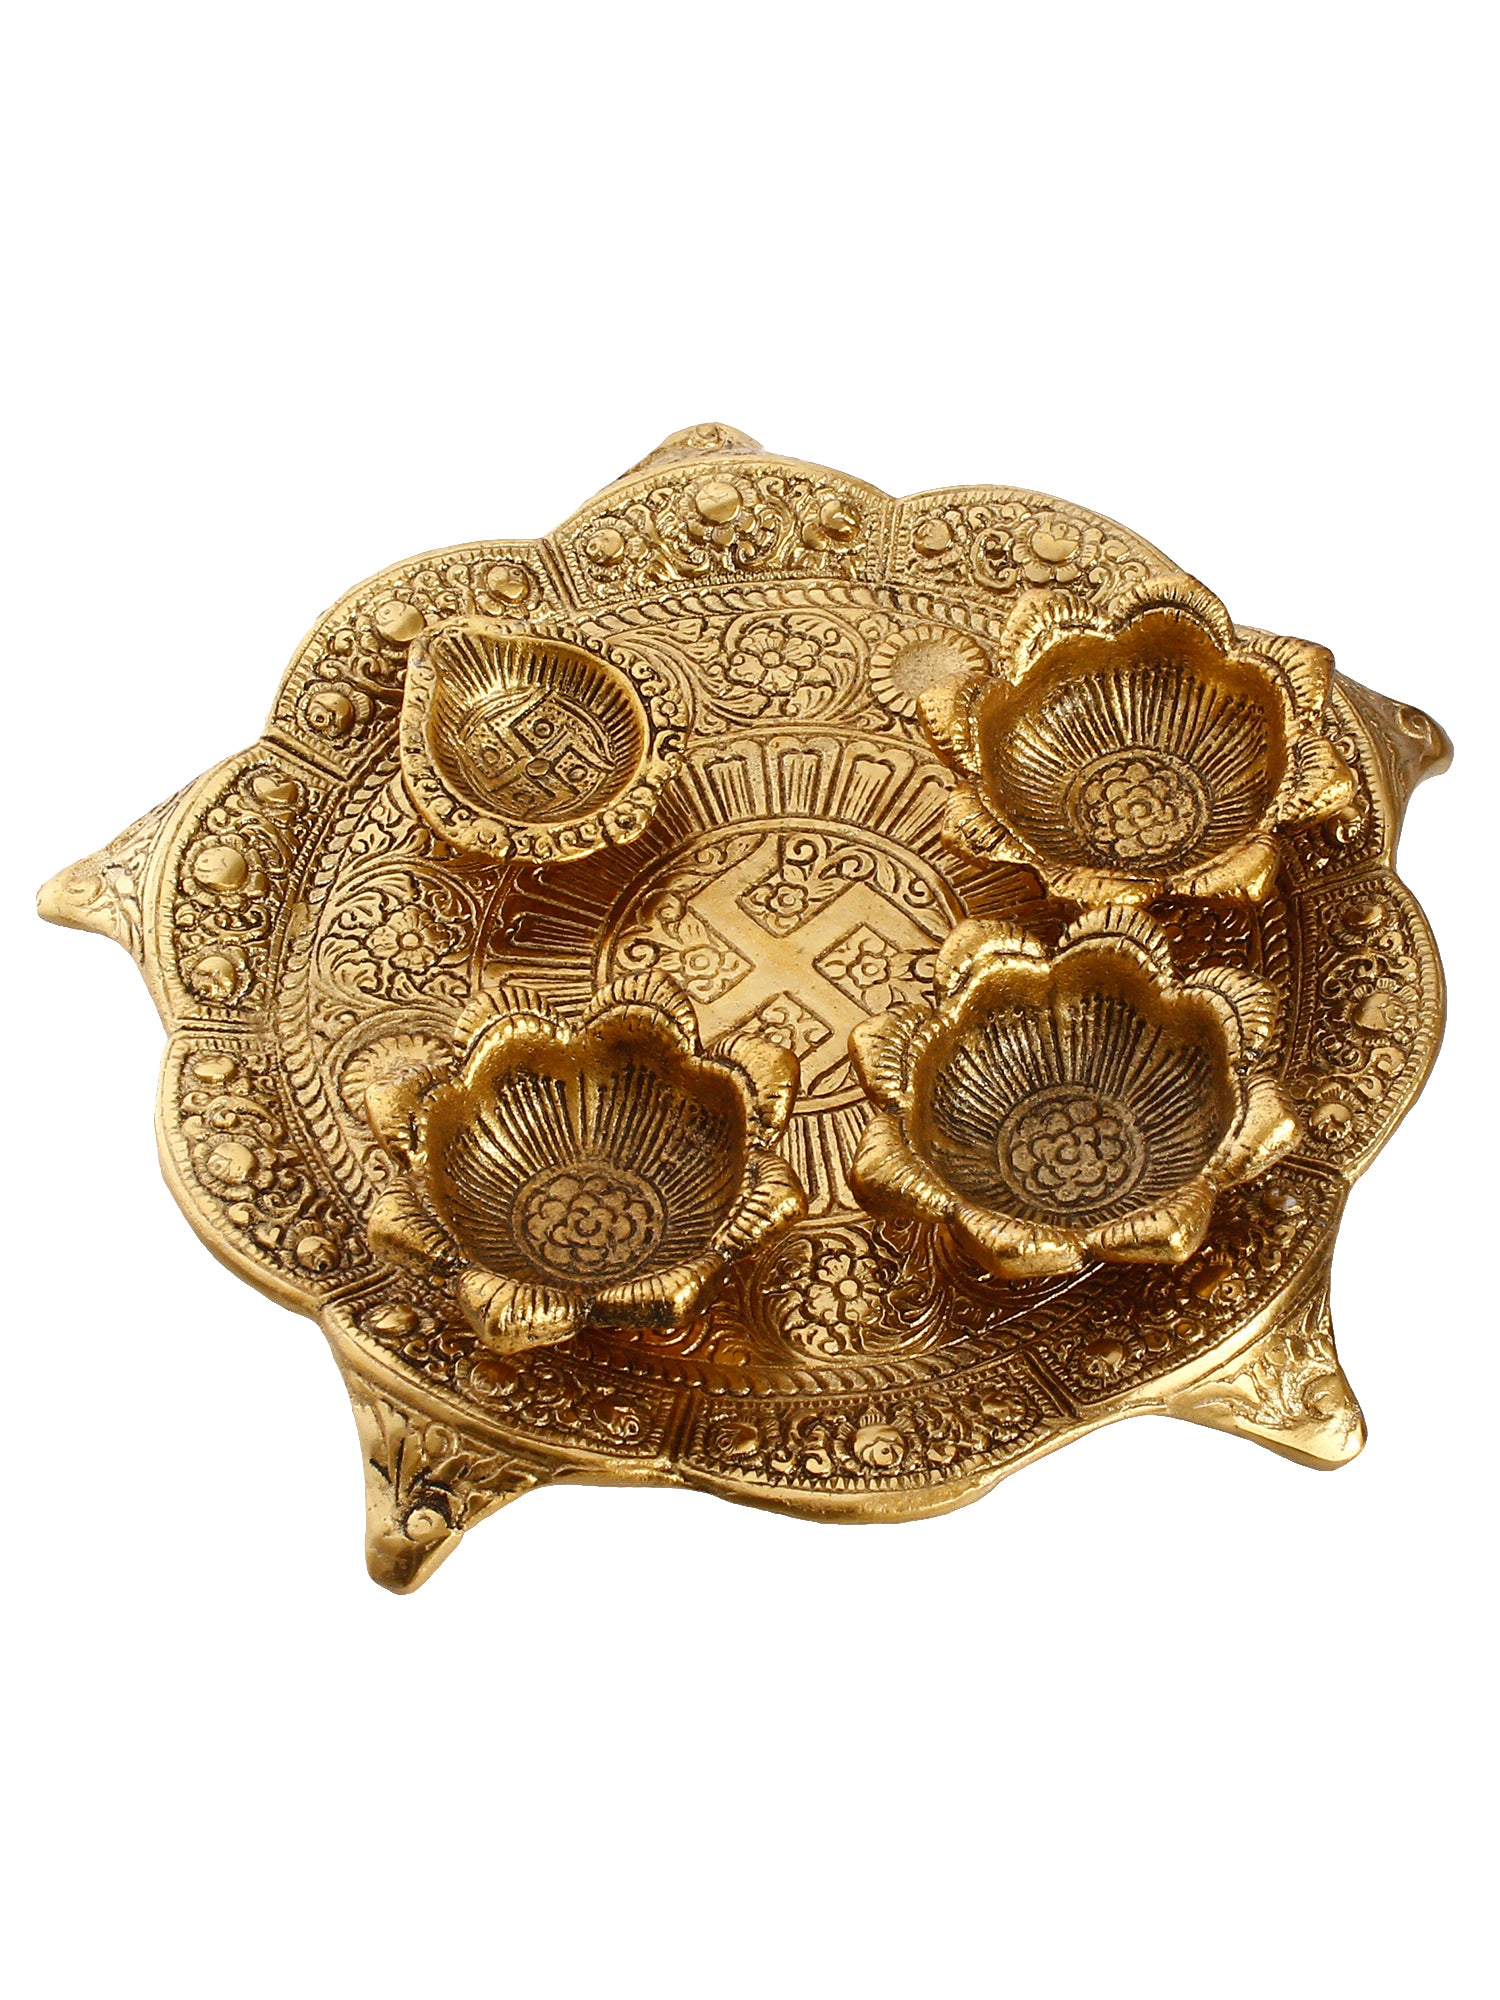 Swastik Design Golden Metal Pooja Thali with 3 Bowls and 1 Diya 2